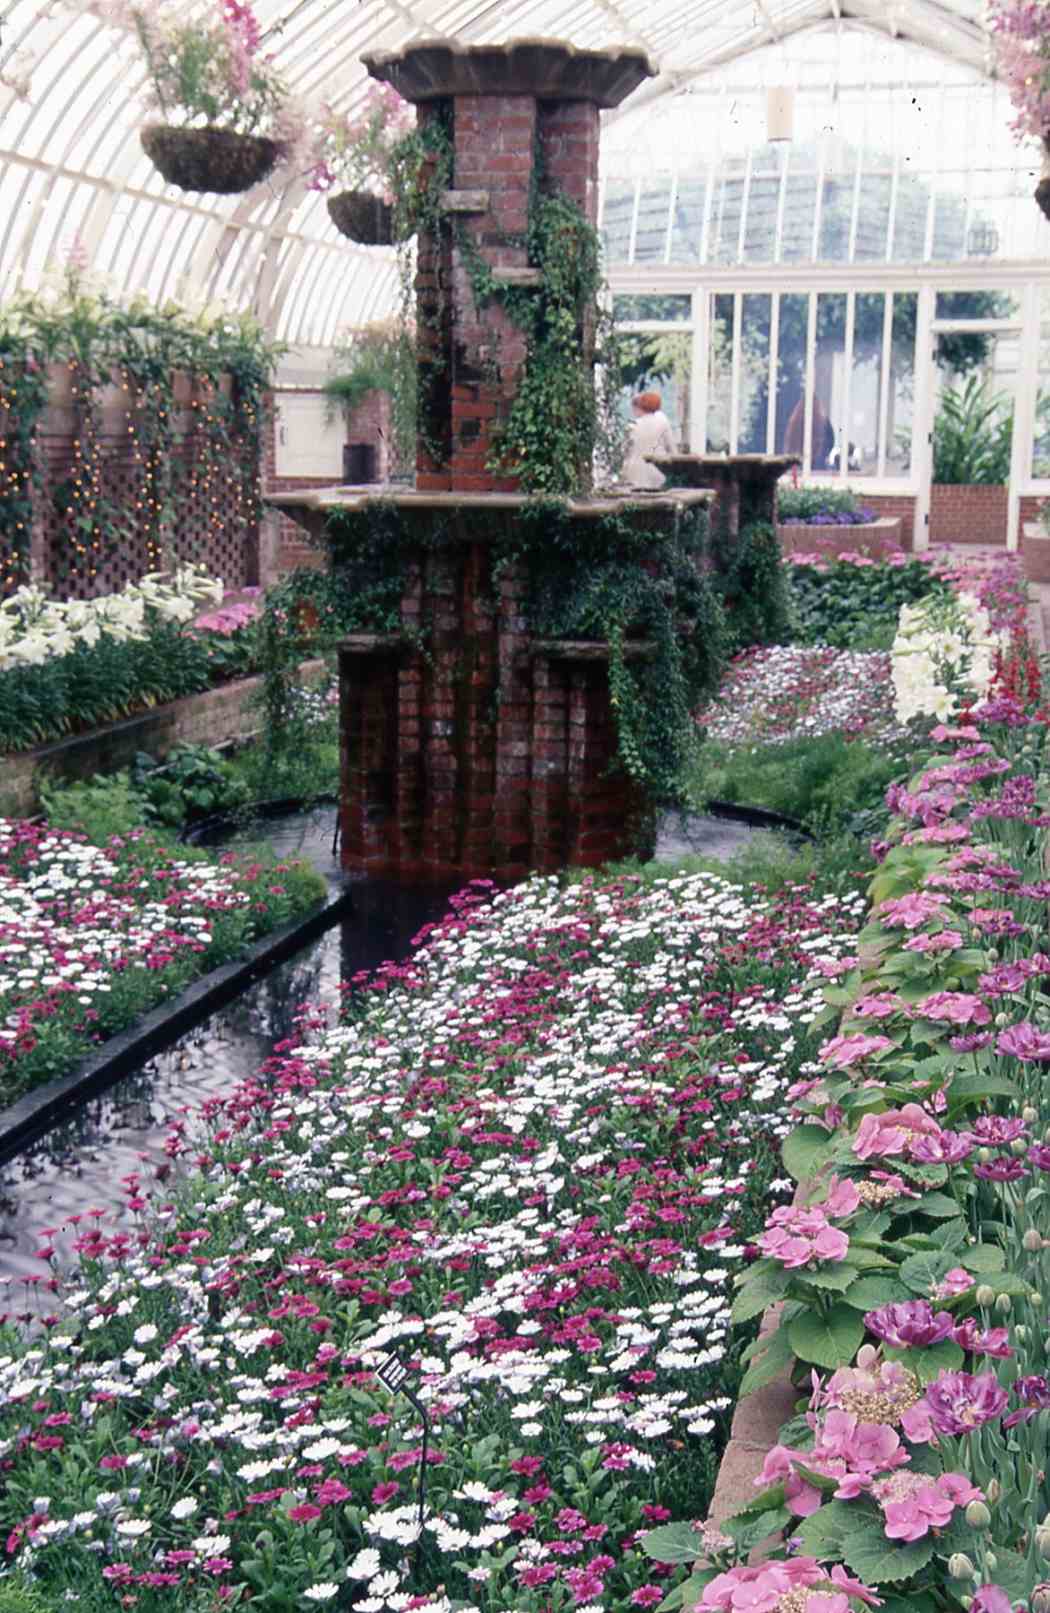 Spring Flower Show 2000: A Splash of Color